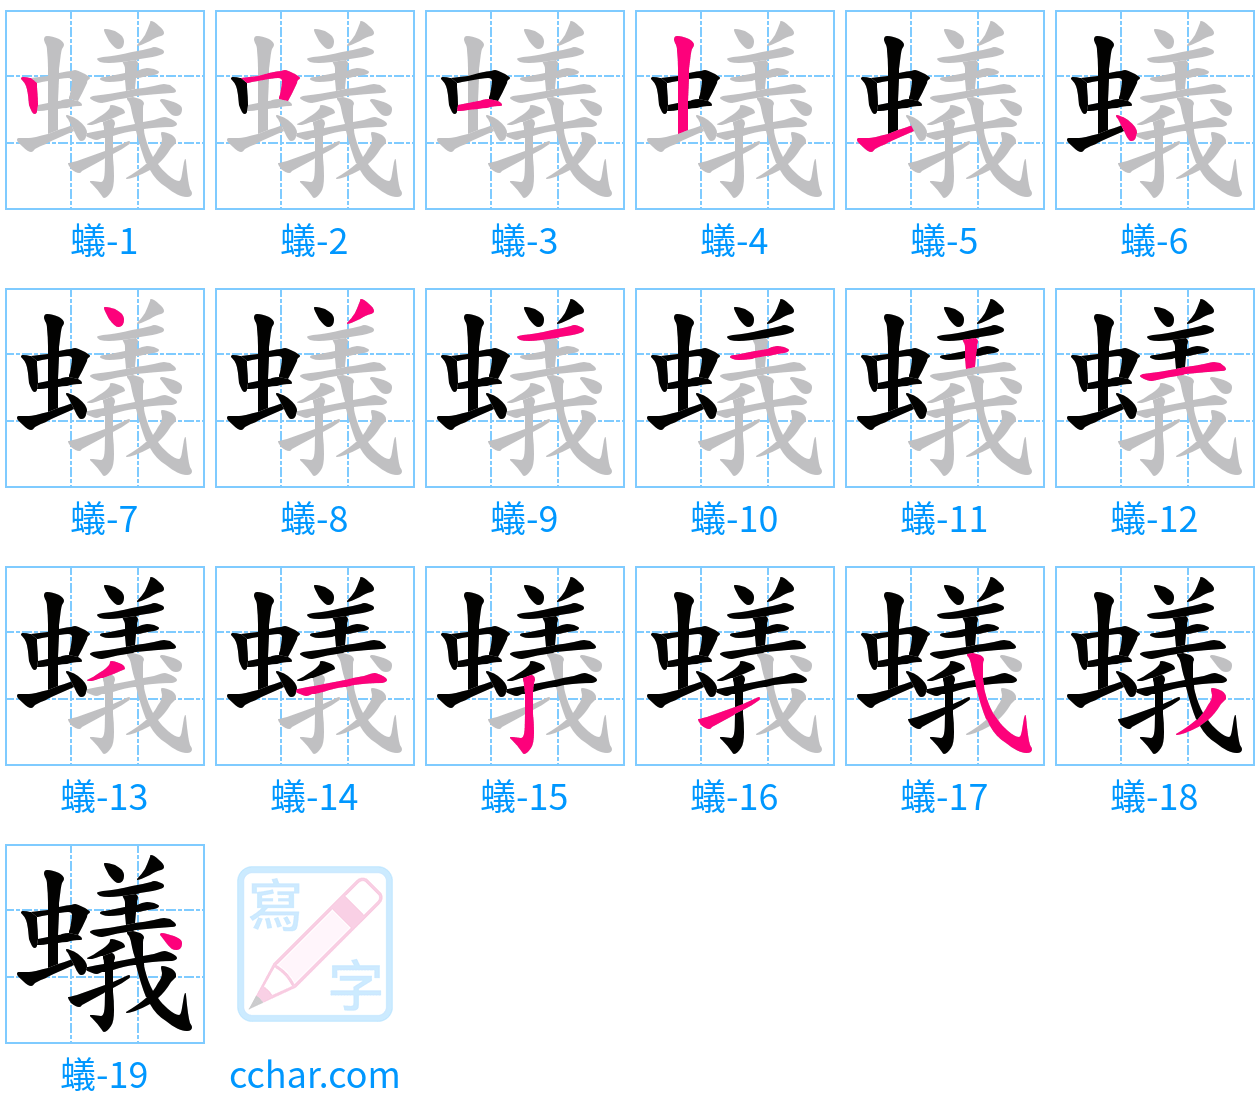 蟻 stroke order step-by-step diagram